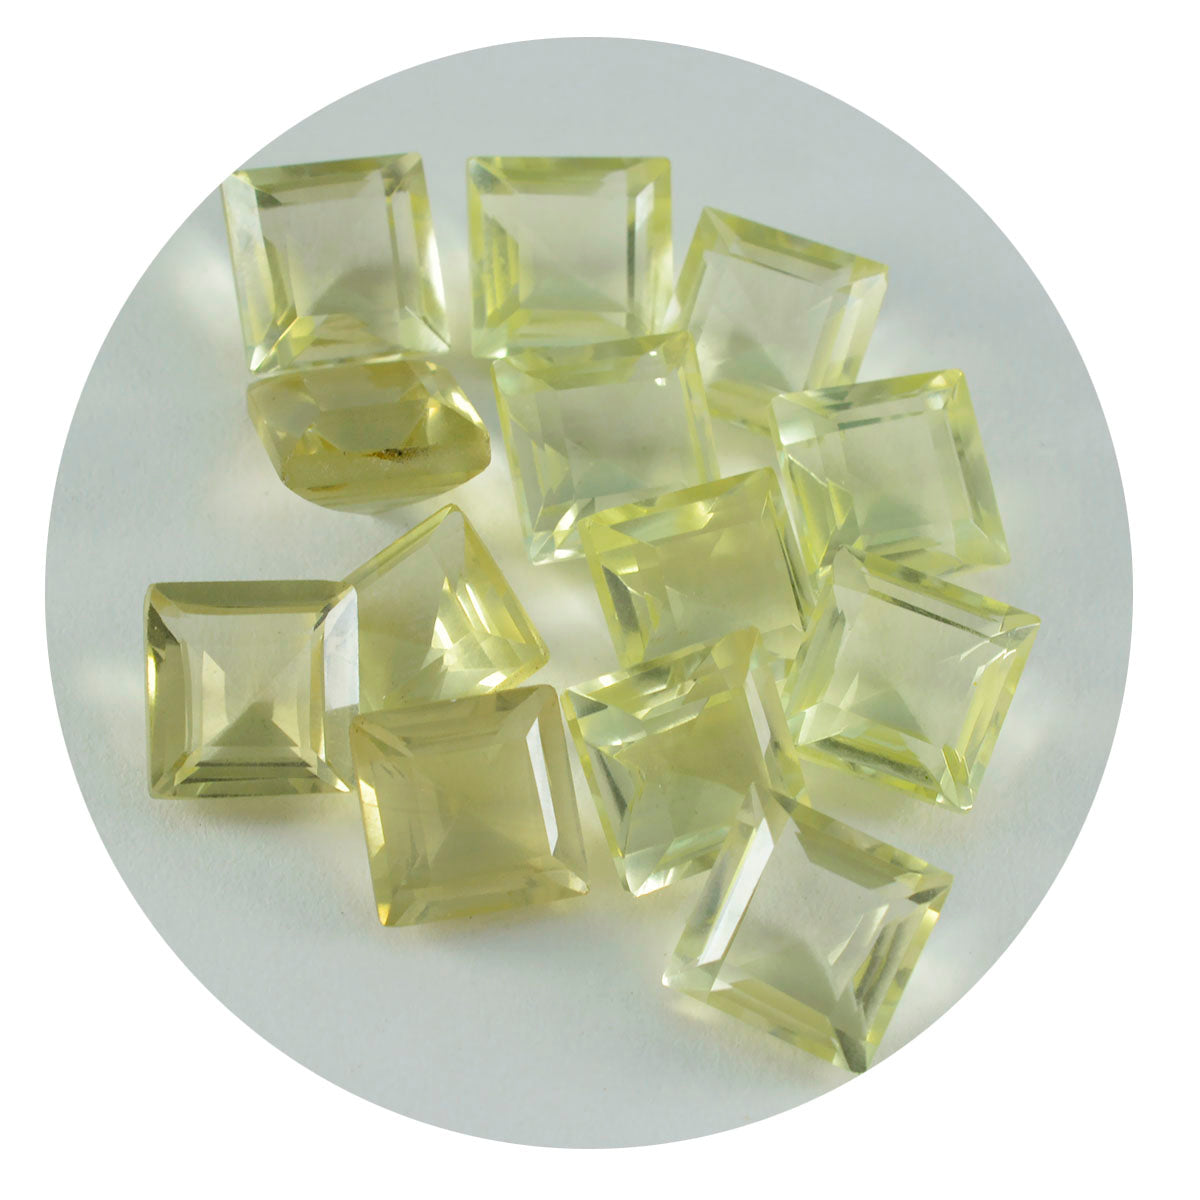 riyogems 1шт желтый лимонный кварц ограненный 7x7 мм квадратная форма качество A1 драгоценные камни